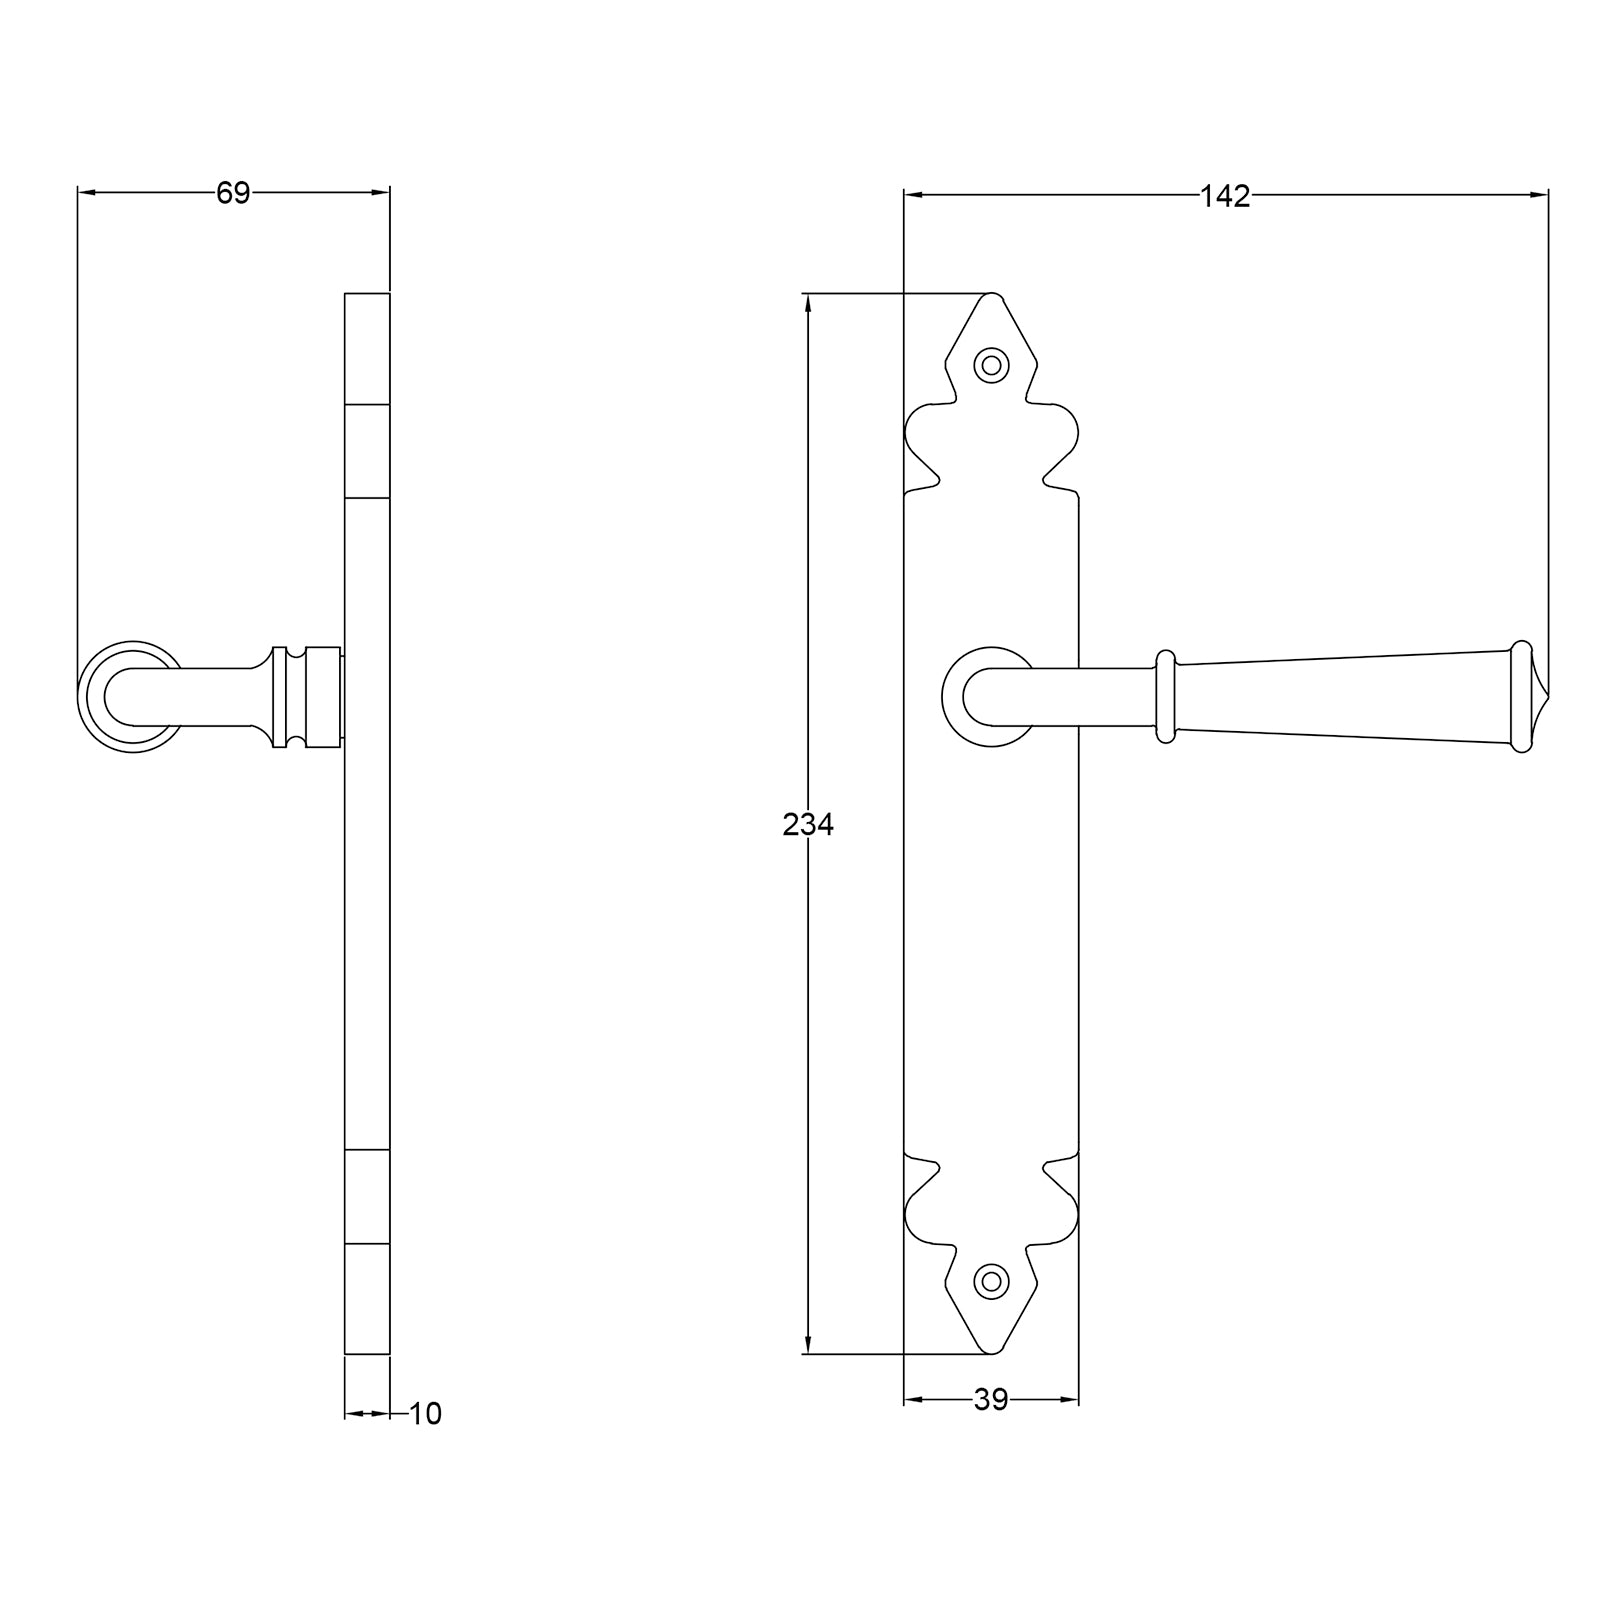 Ludlow door handle dimension drawing SHOW